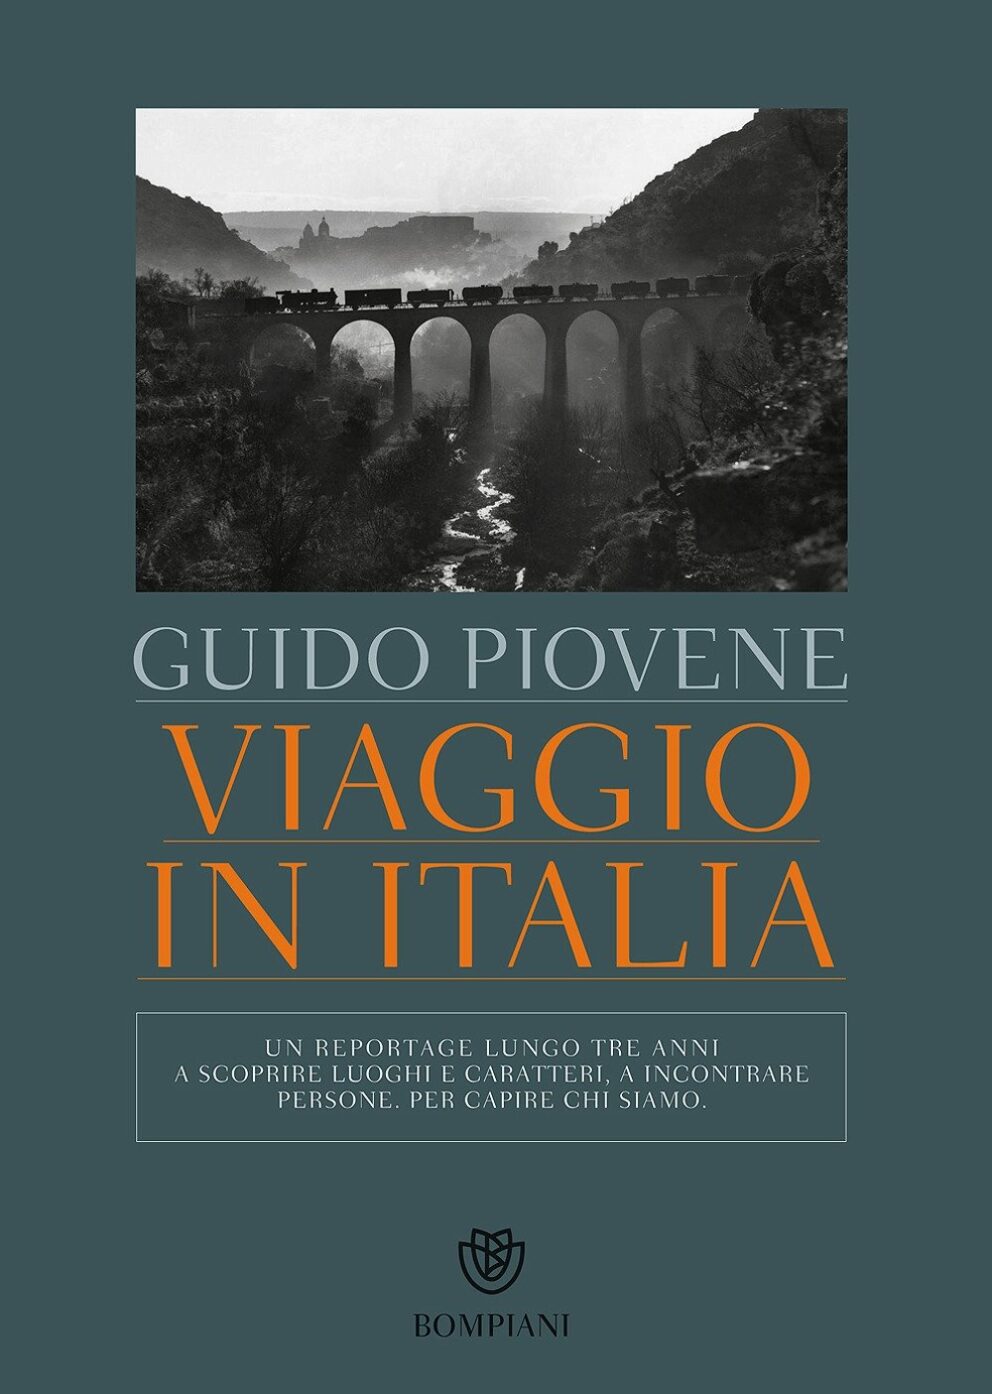 Il libro della settimana: Viaggio in Italia, di Guido Piovene